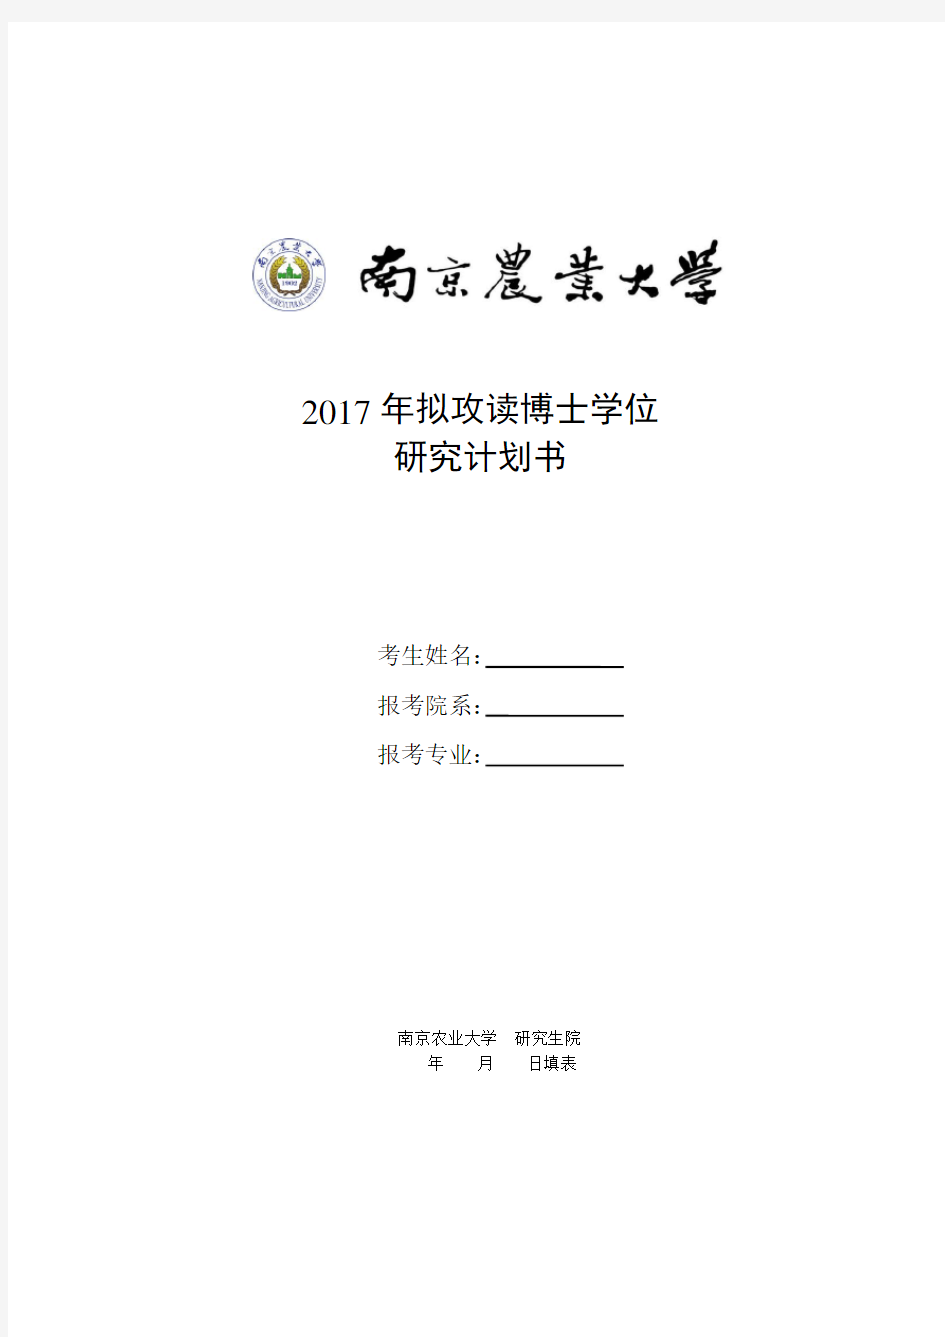 南京农业大学2017年拟攻读博士学位研究计划书-2016-11-28